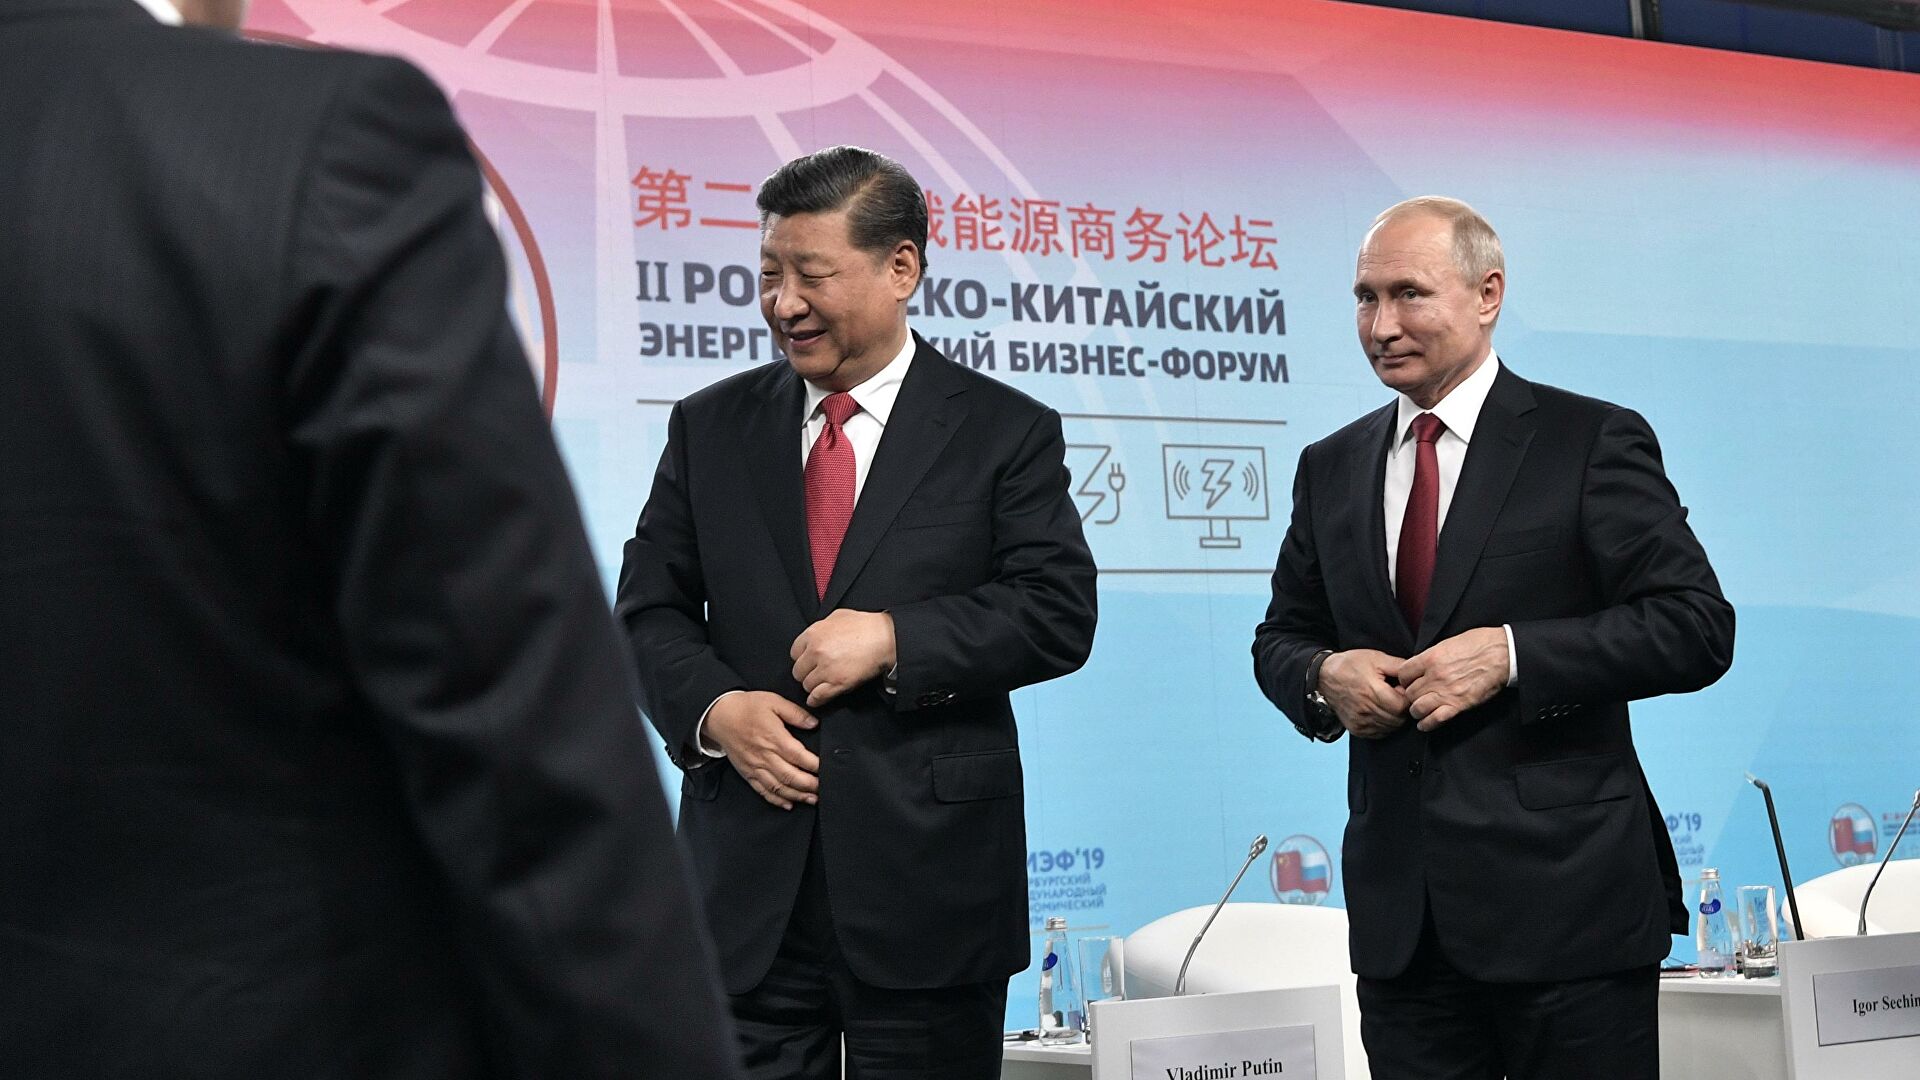 Die Presse: Путин боится Си Цзиньпина. Россия становится сателлитом Поднебесной?